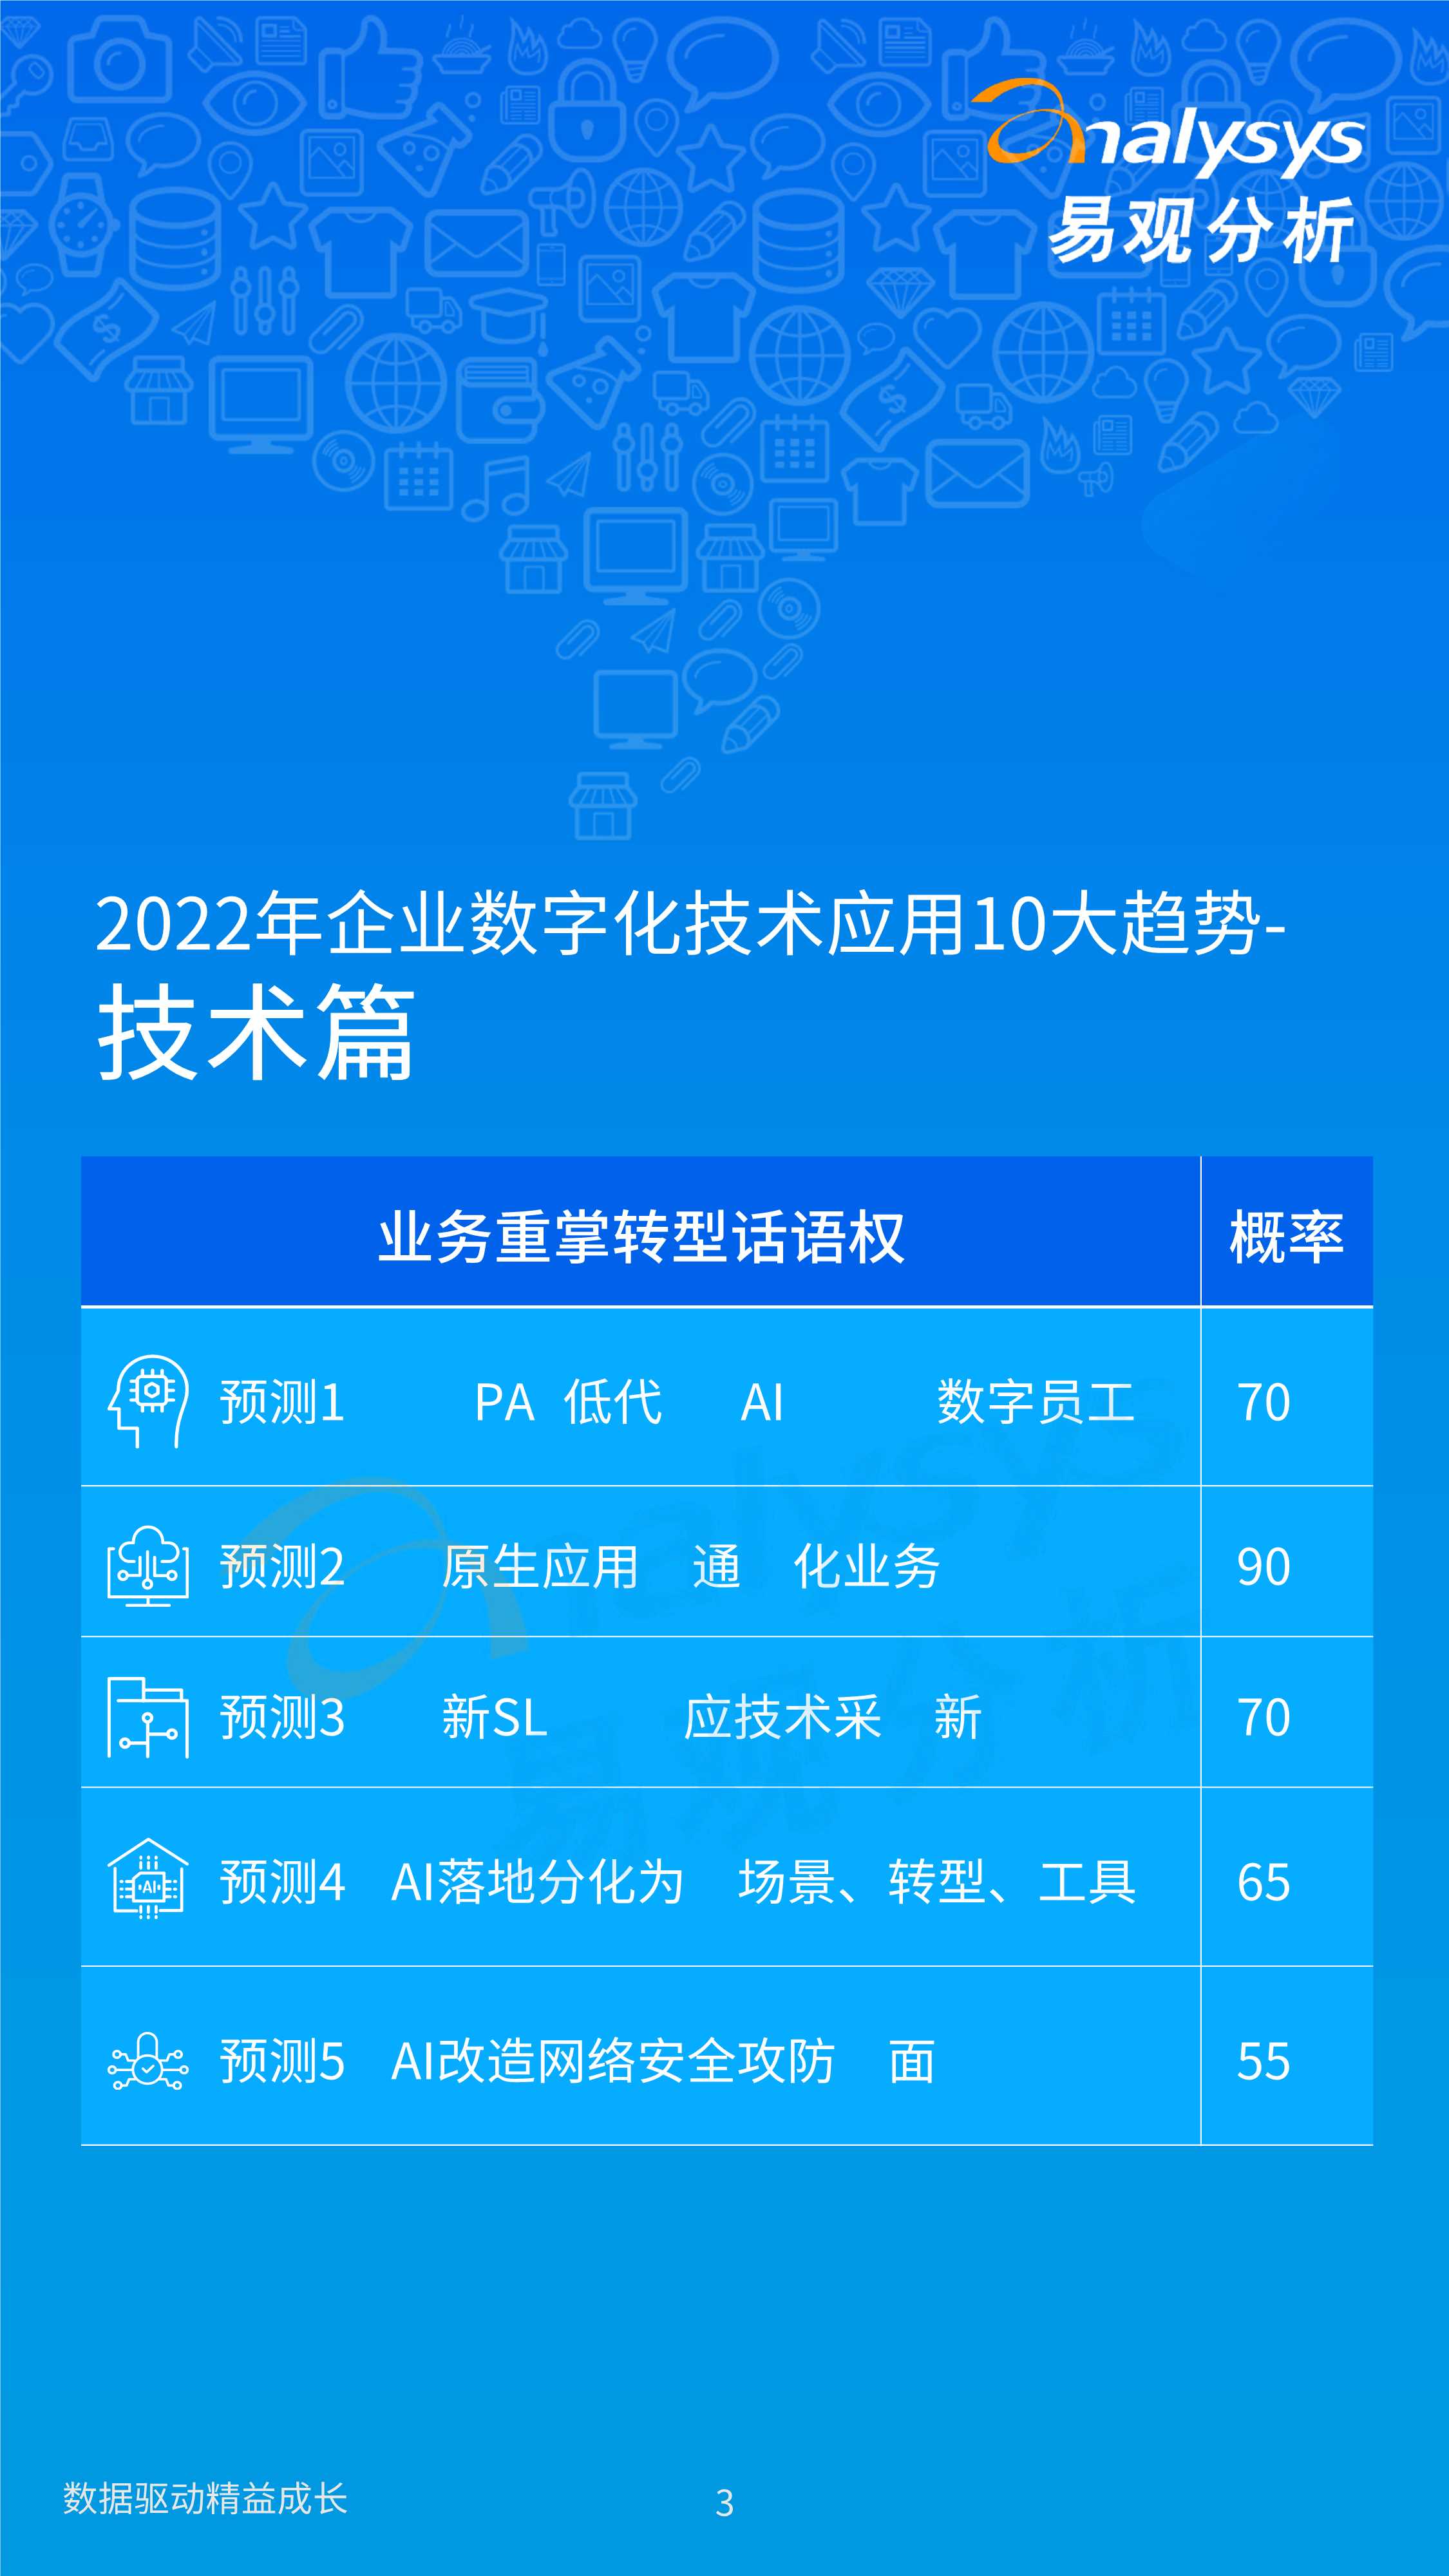 2022年企业数字化技术应用10大趋势-2022.03-18页